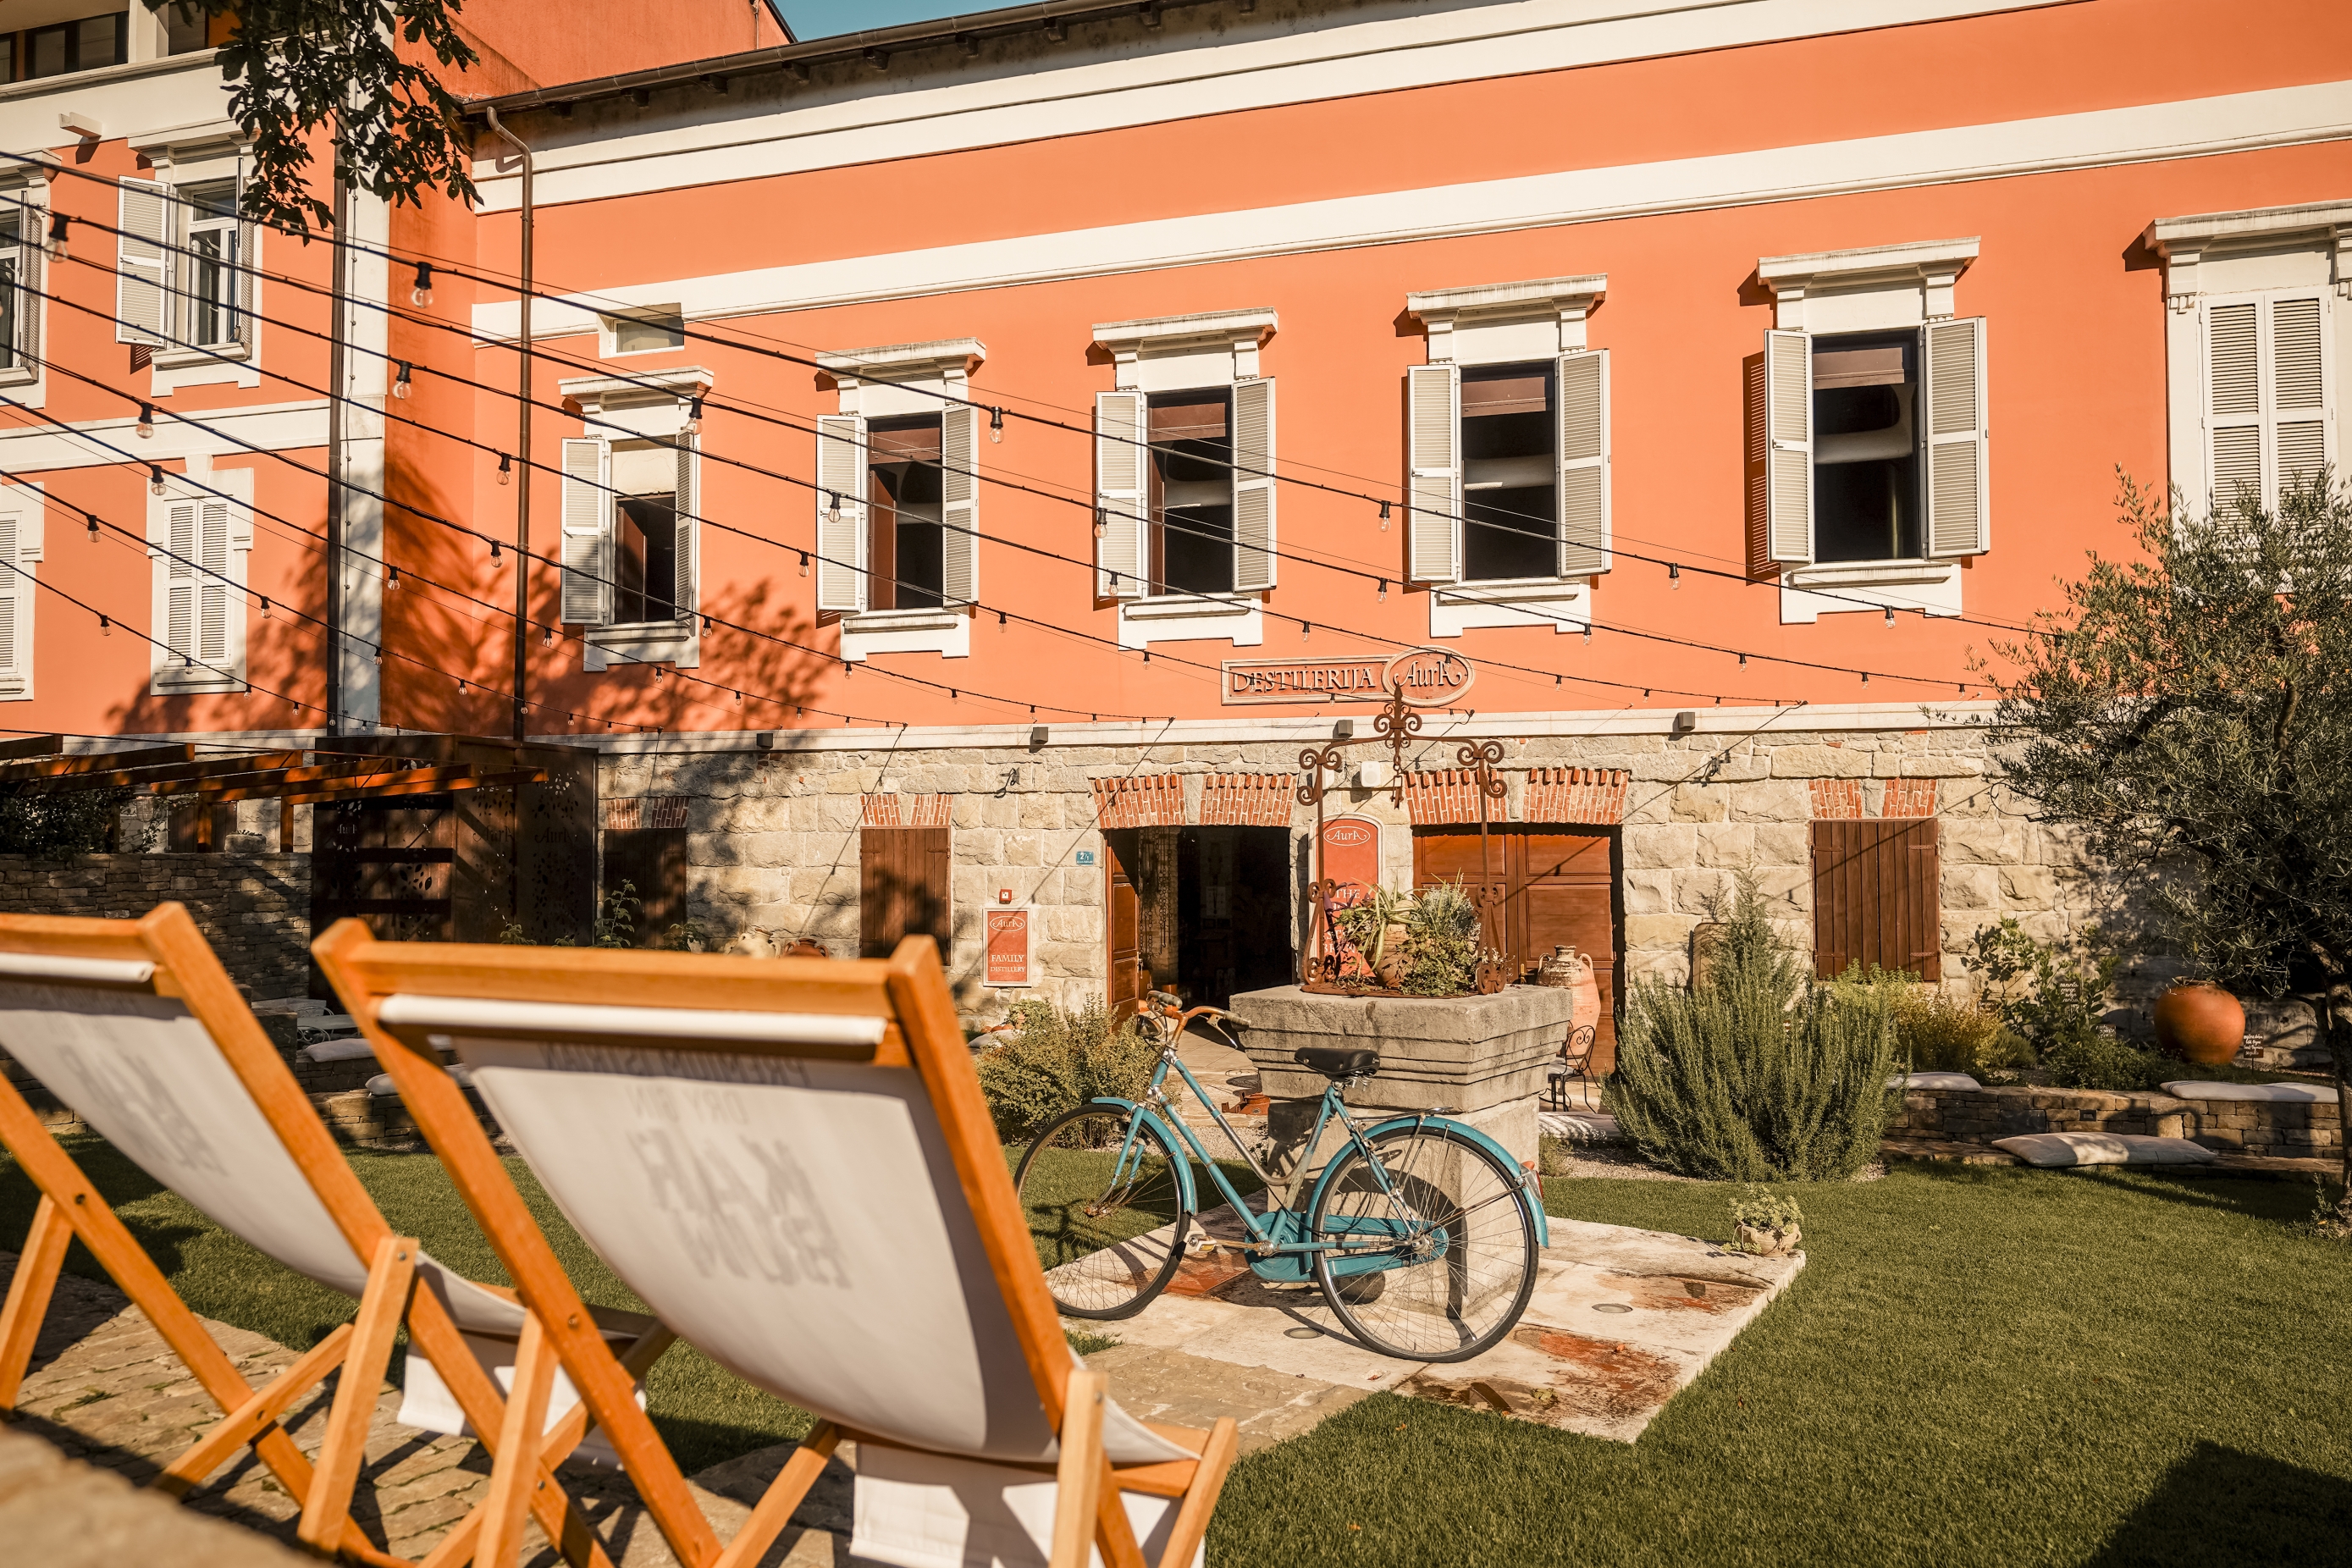 Ideja za proljetni izlet u Istru: Našli smo pravo mjesto za opuštanje i uživanje